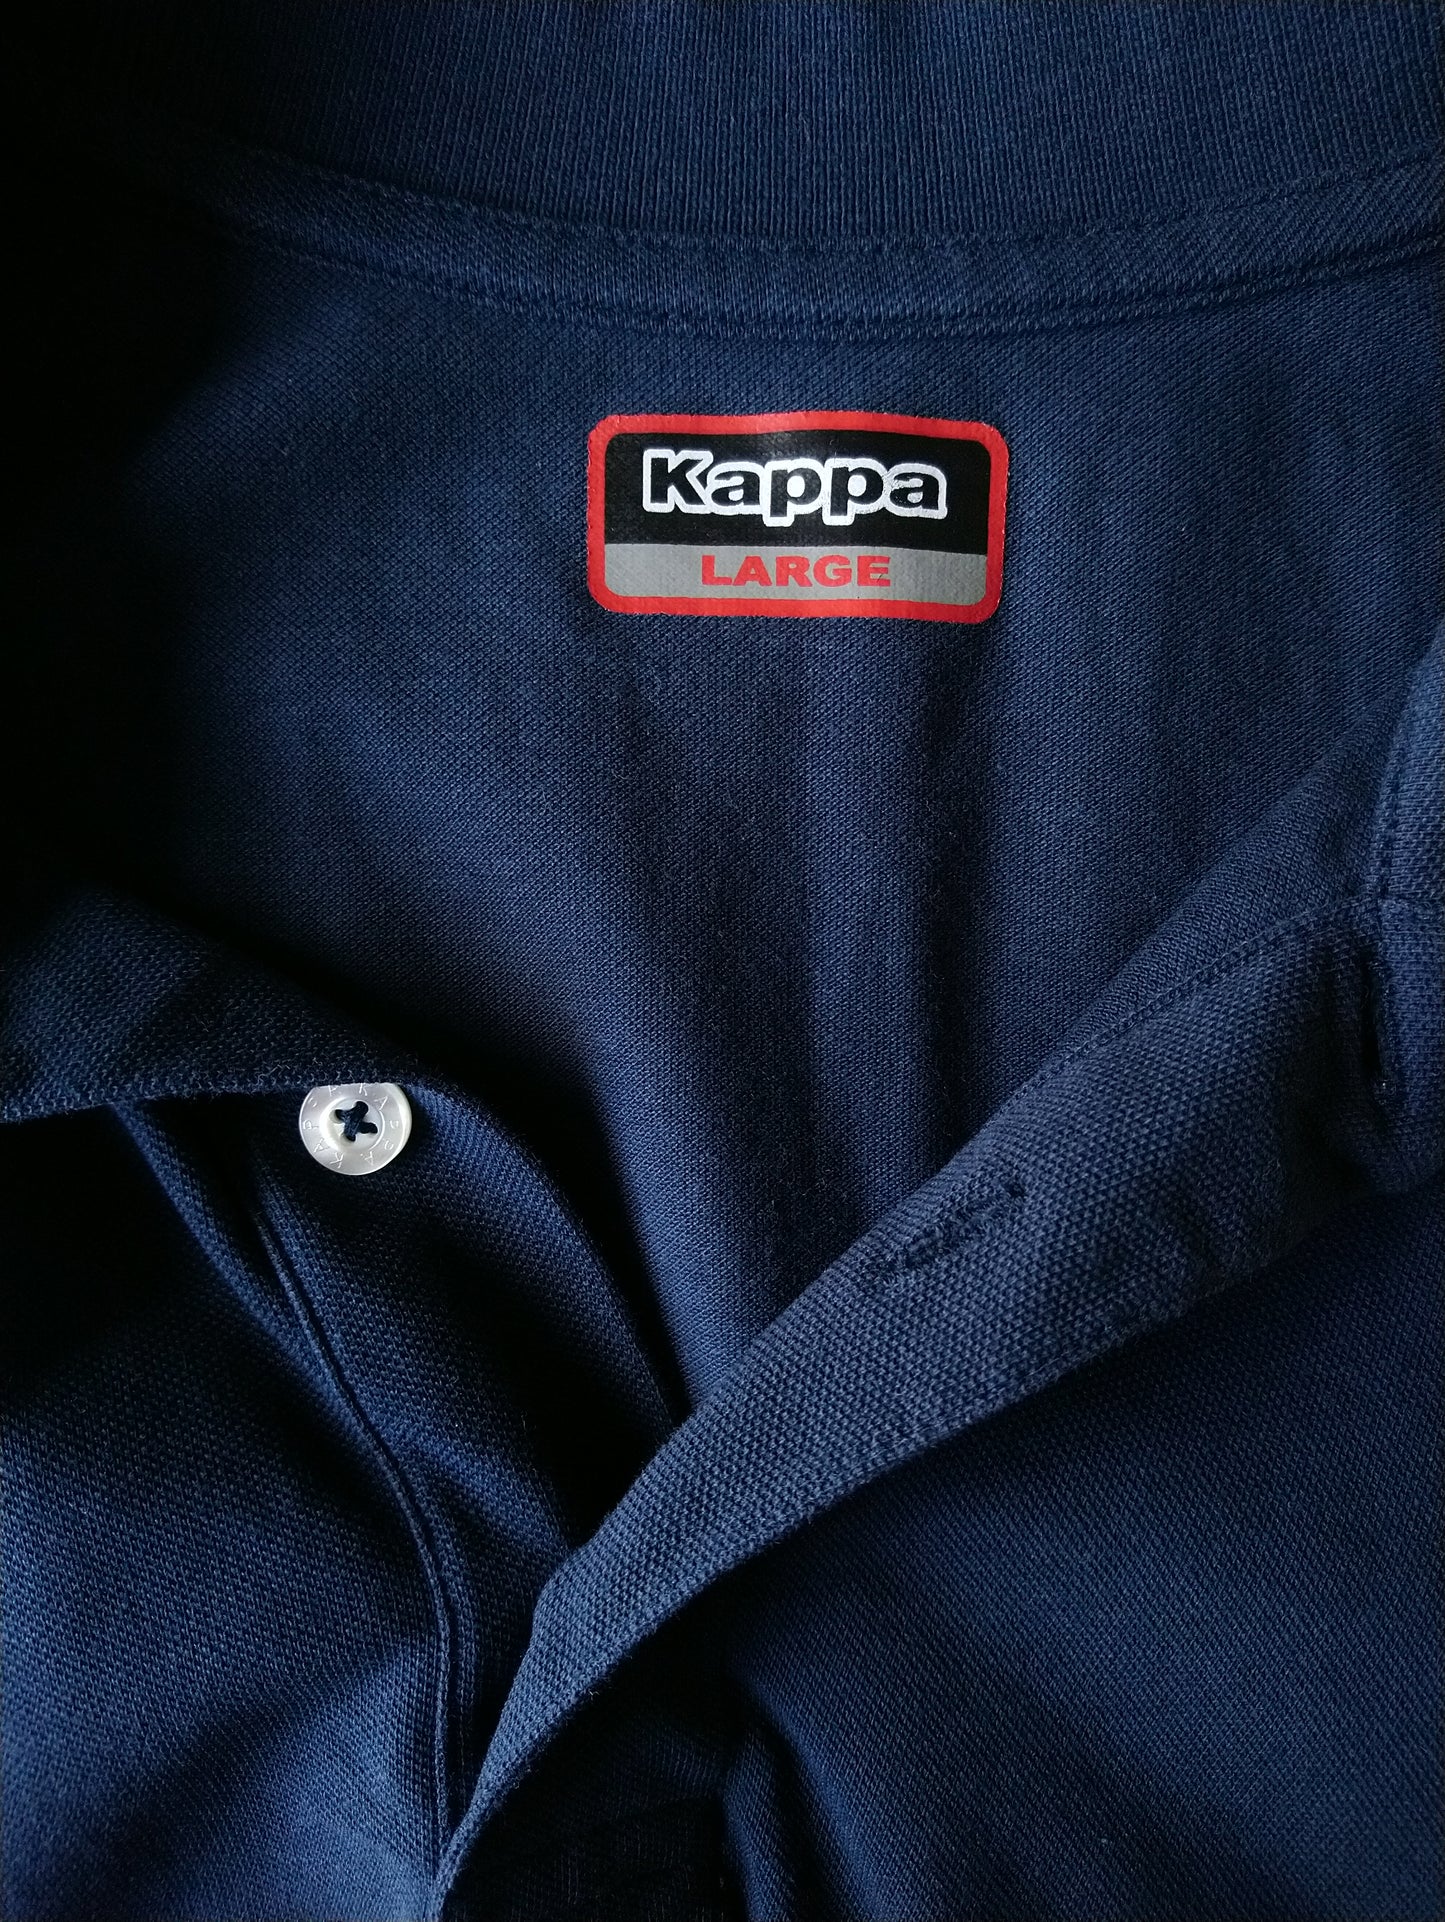 Kappa Polo. Dark blue colored. Size L.